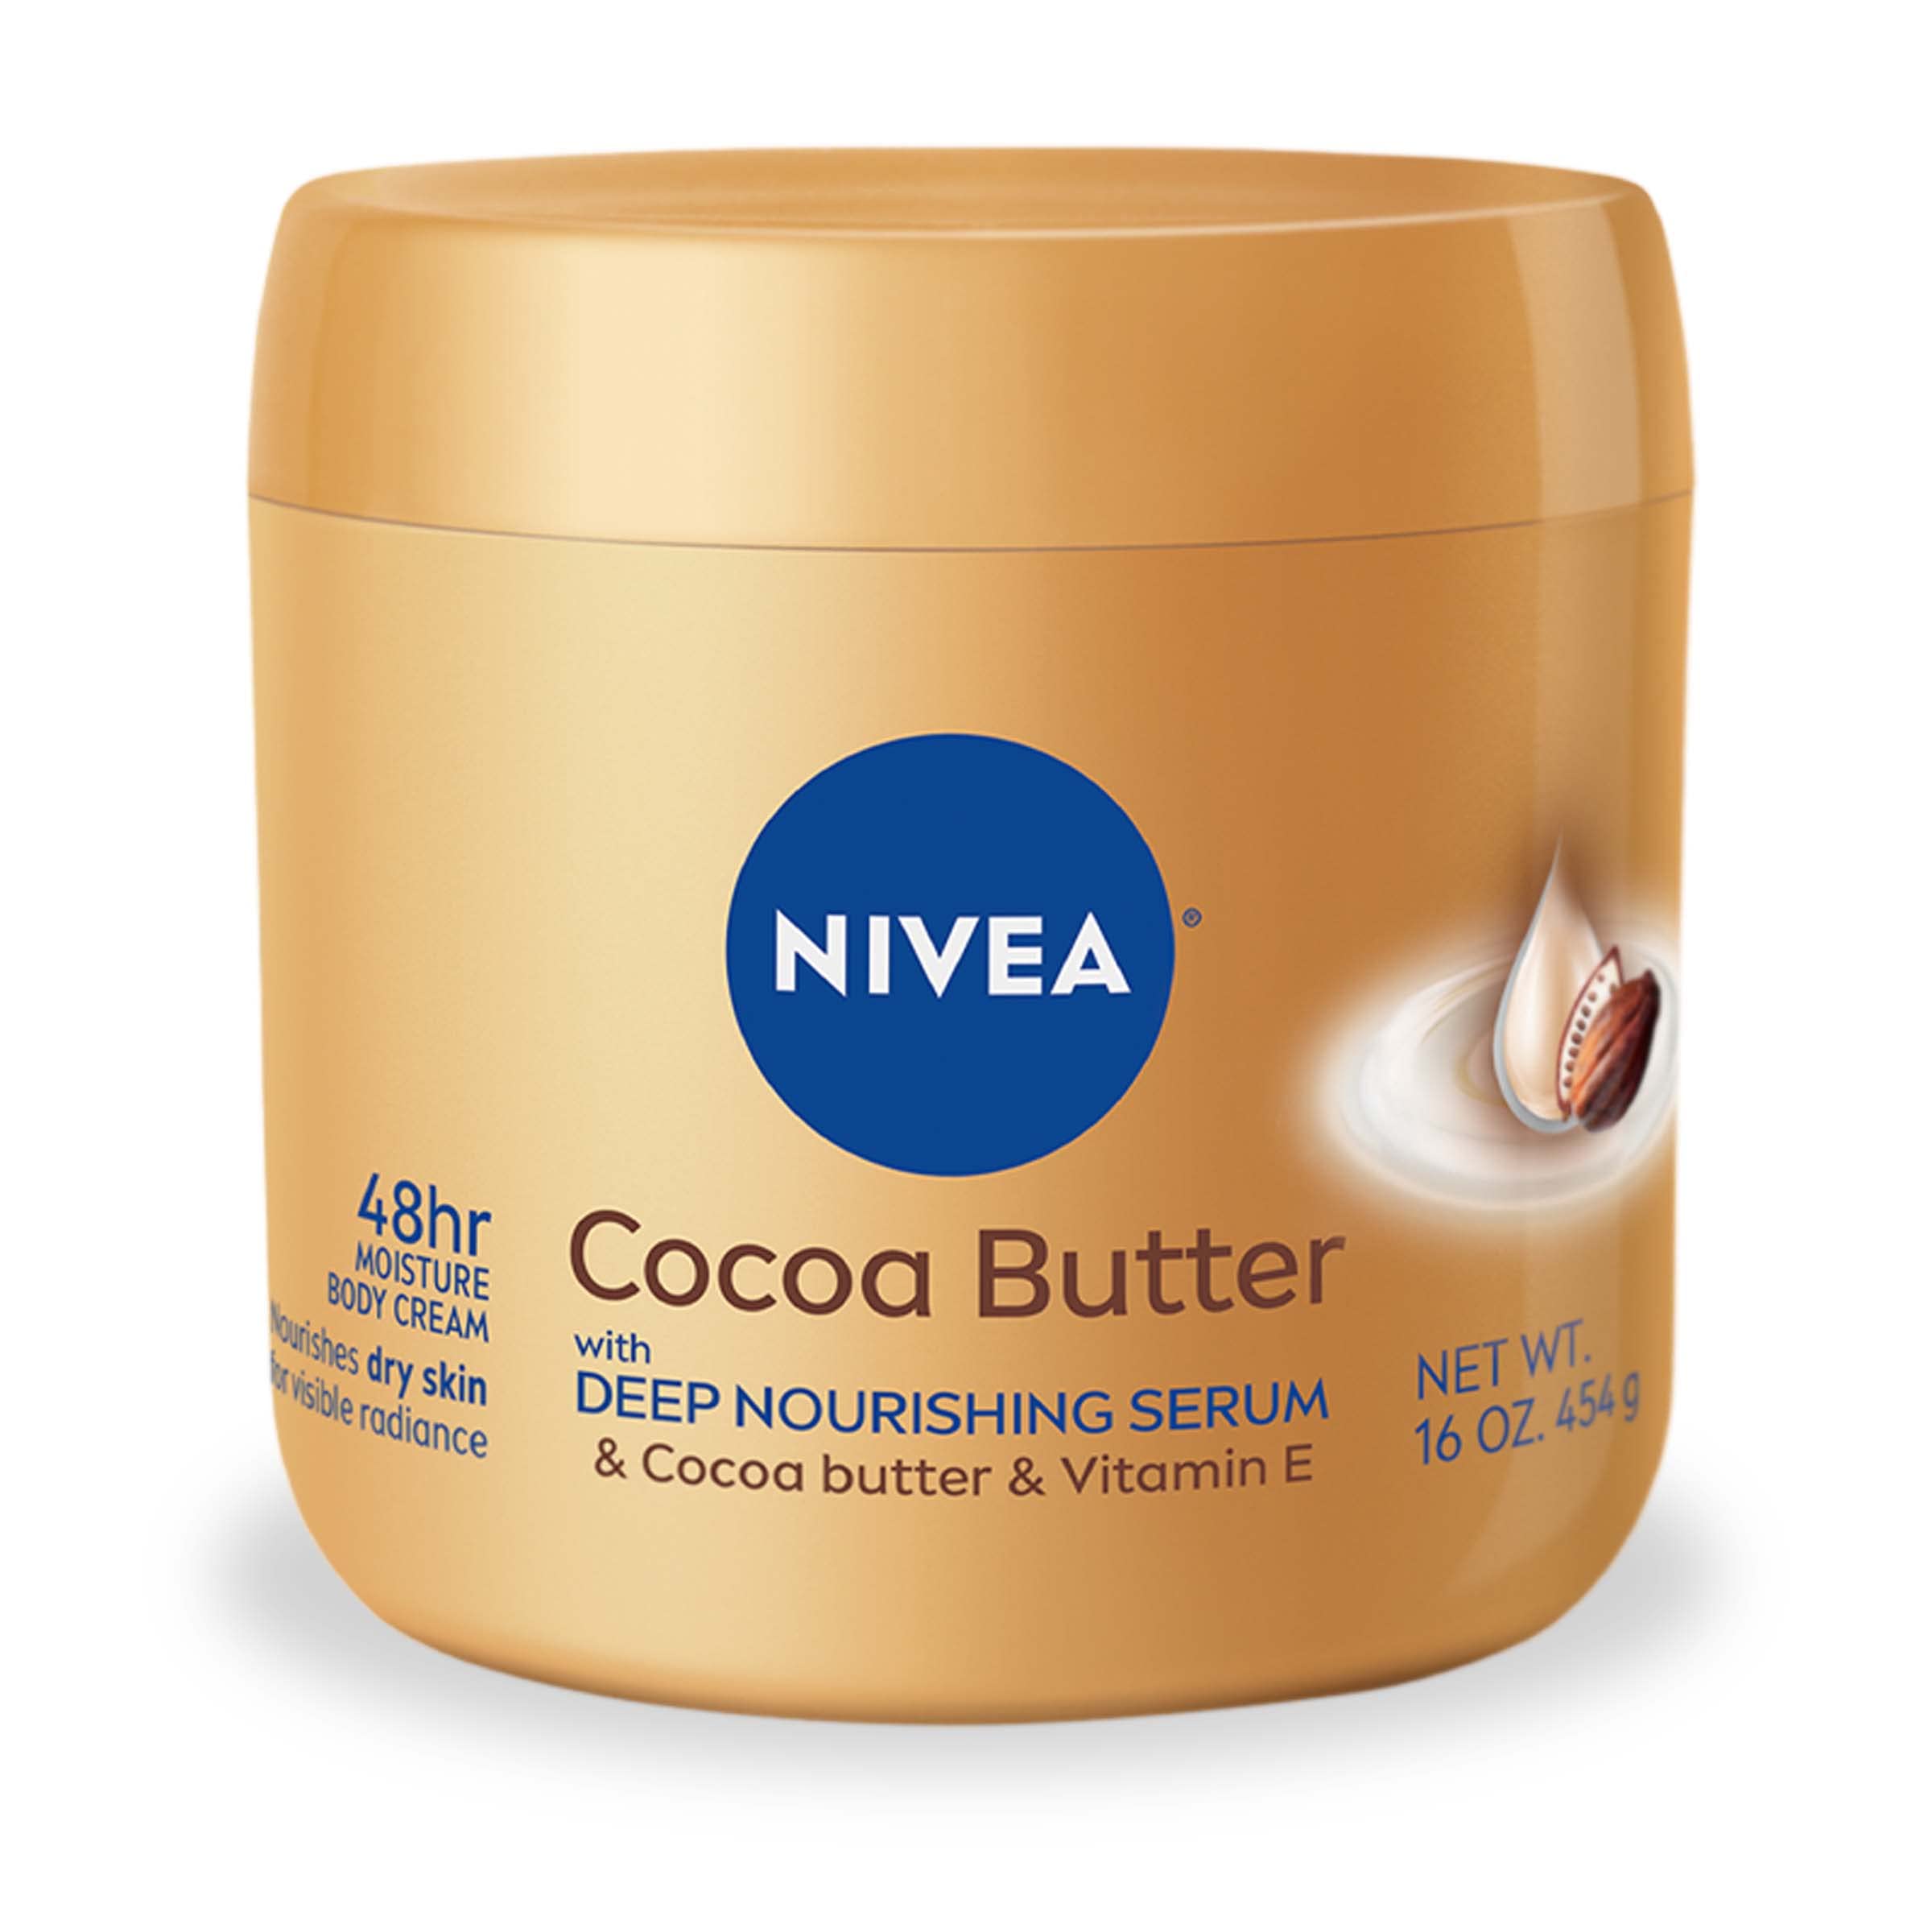 16-Oz NIVEA Cocoa Butter Body Cream w/ Deep Moisture Serum $4.59 w/ S&S + Free Shipping w/ Prime or on $35+